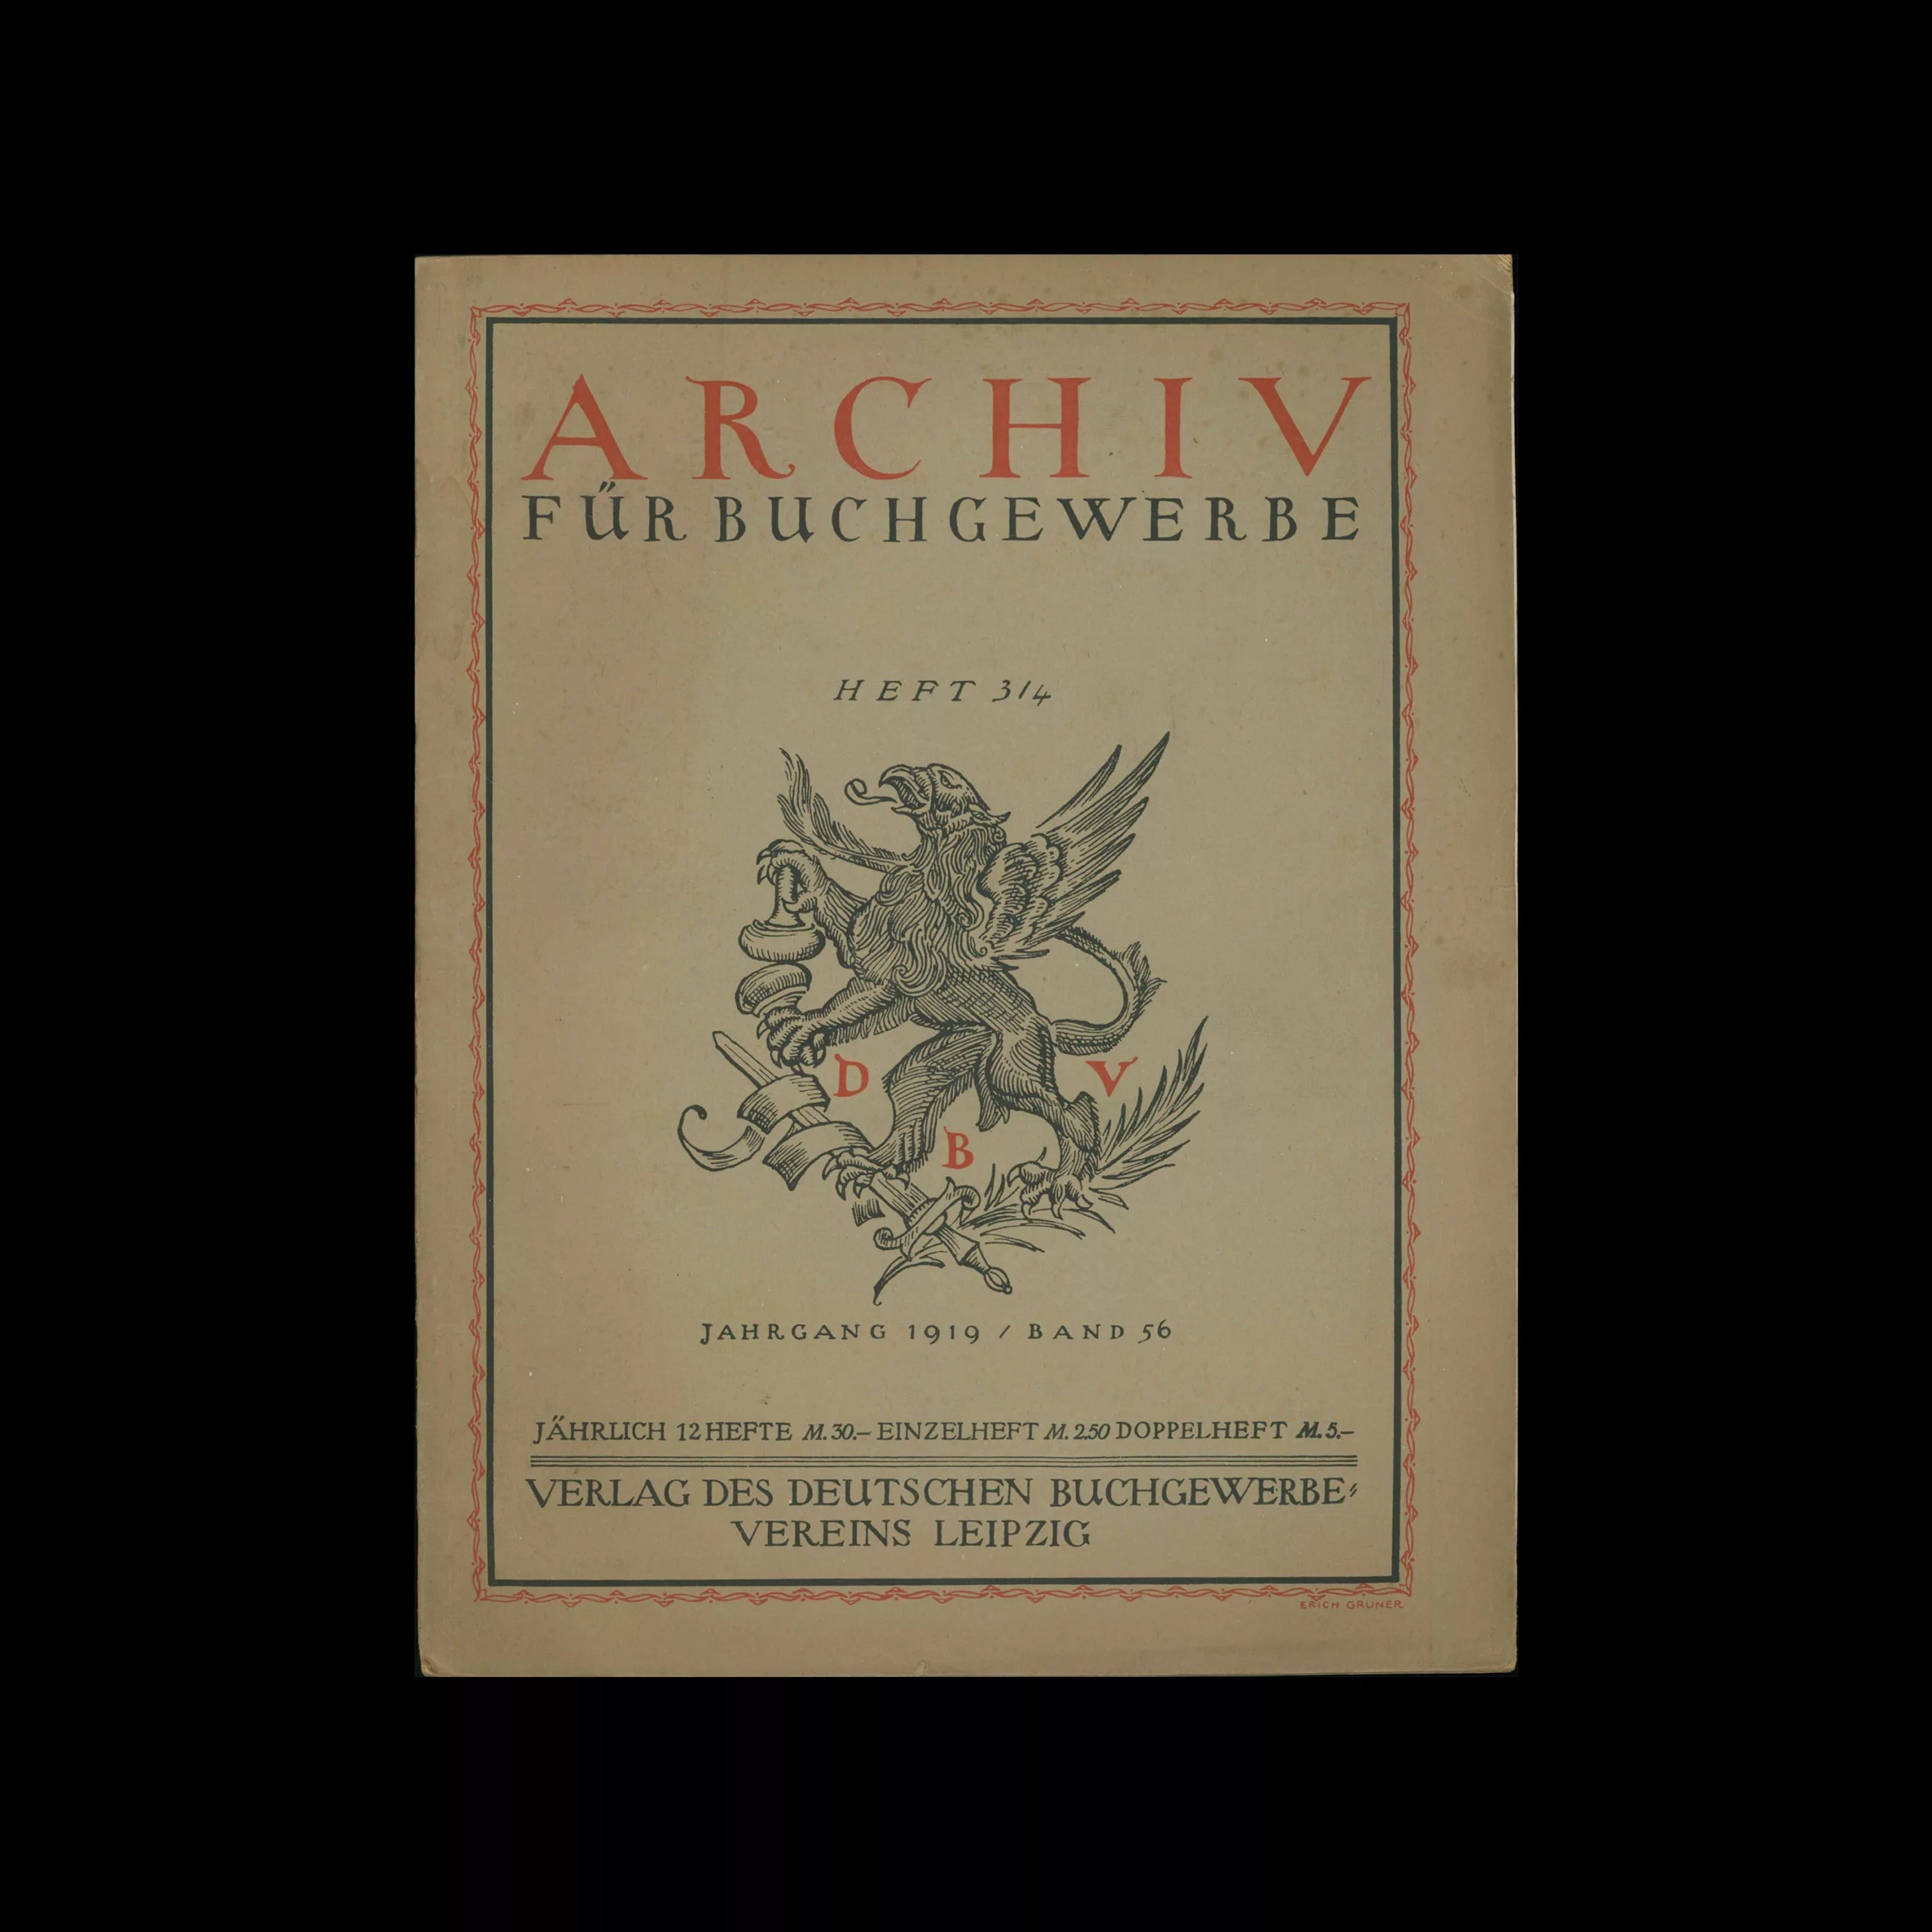 Archiv für Buchgewerbe und Gebrauchsgraphik, December 1919